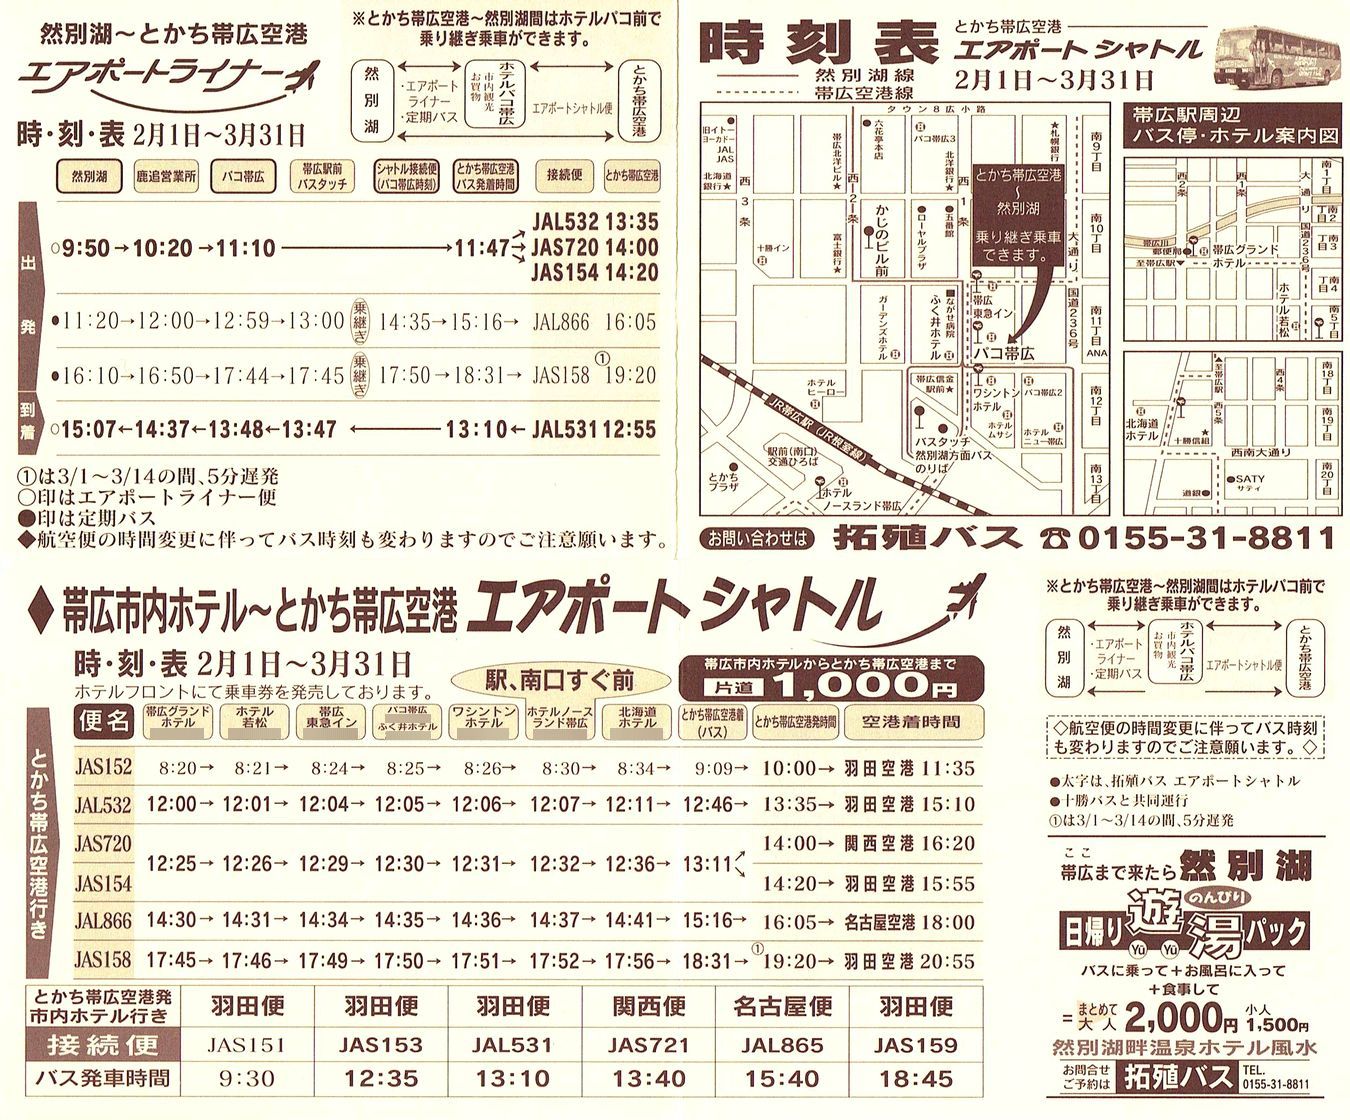 2002-02-01現在_北海道拓殖バス_とかち帯広空港連絡バス時刻表